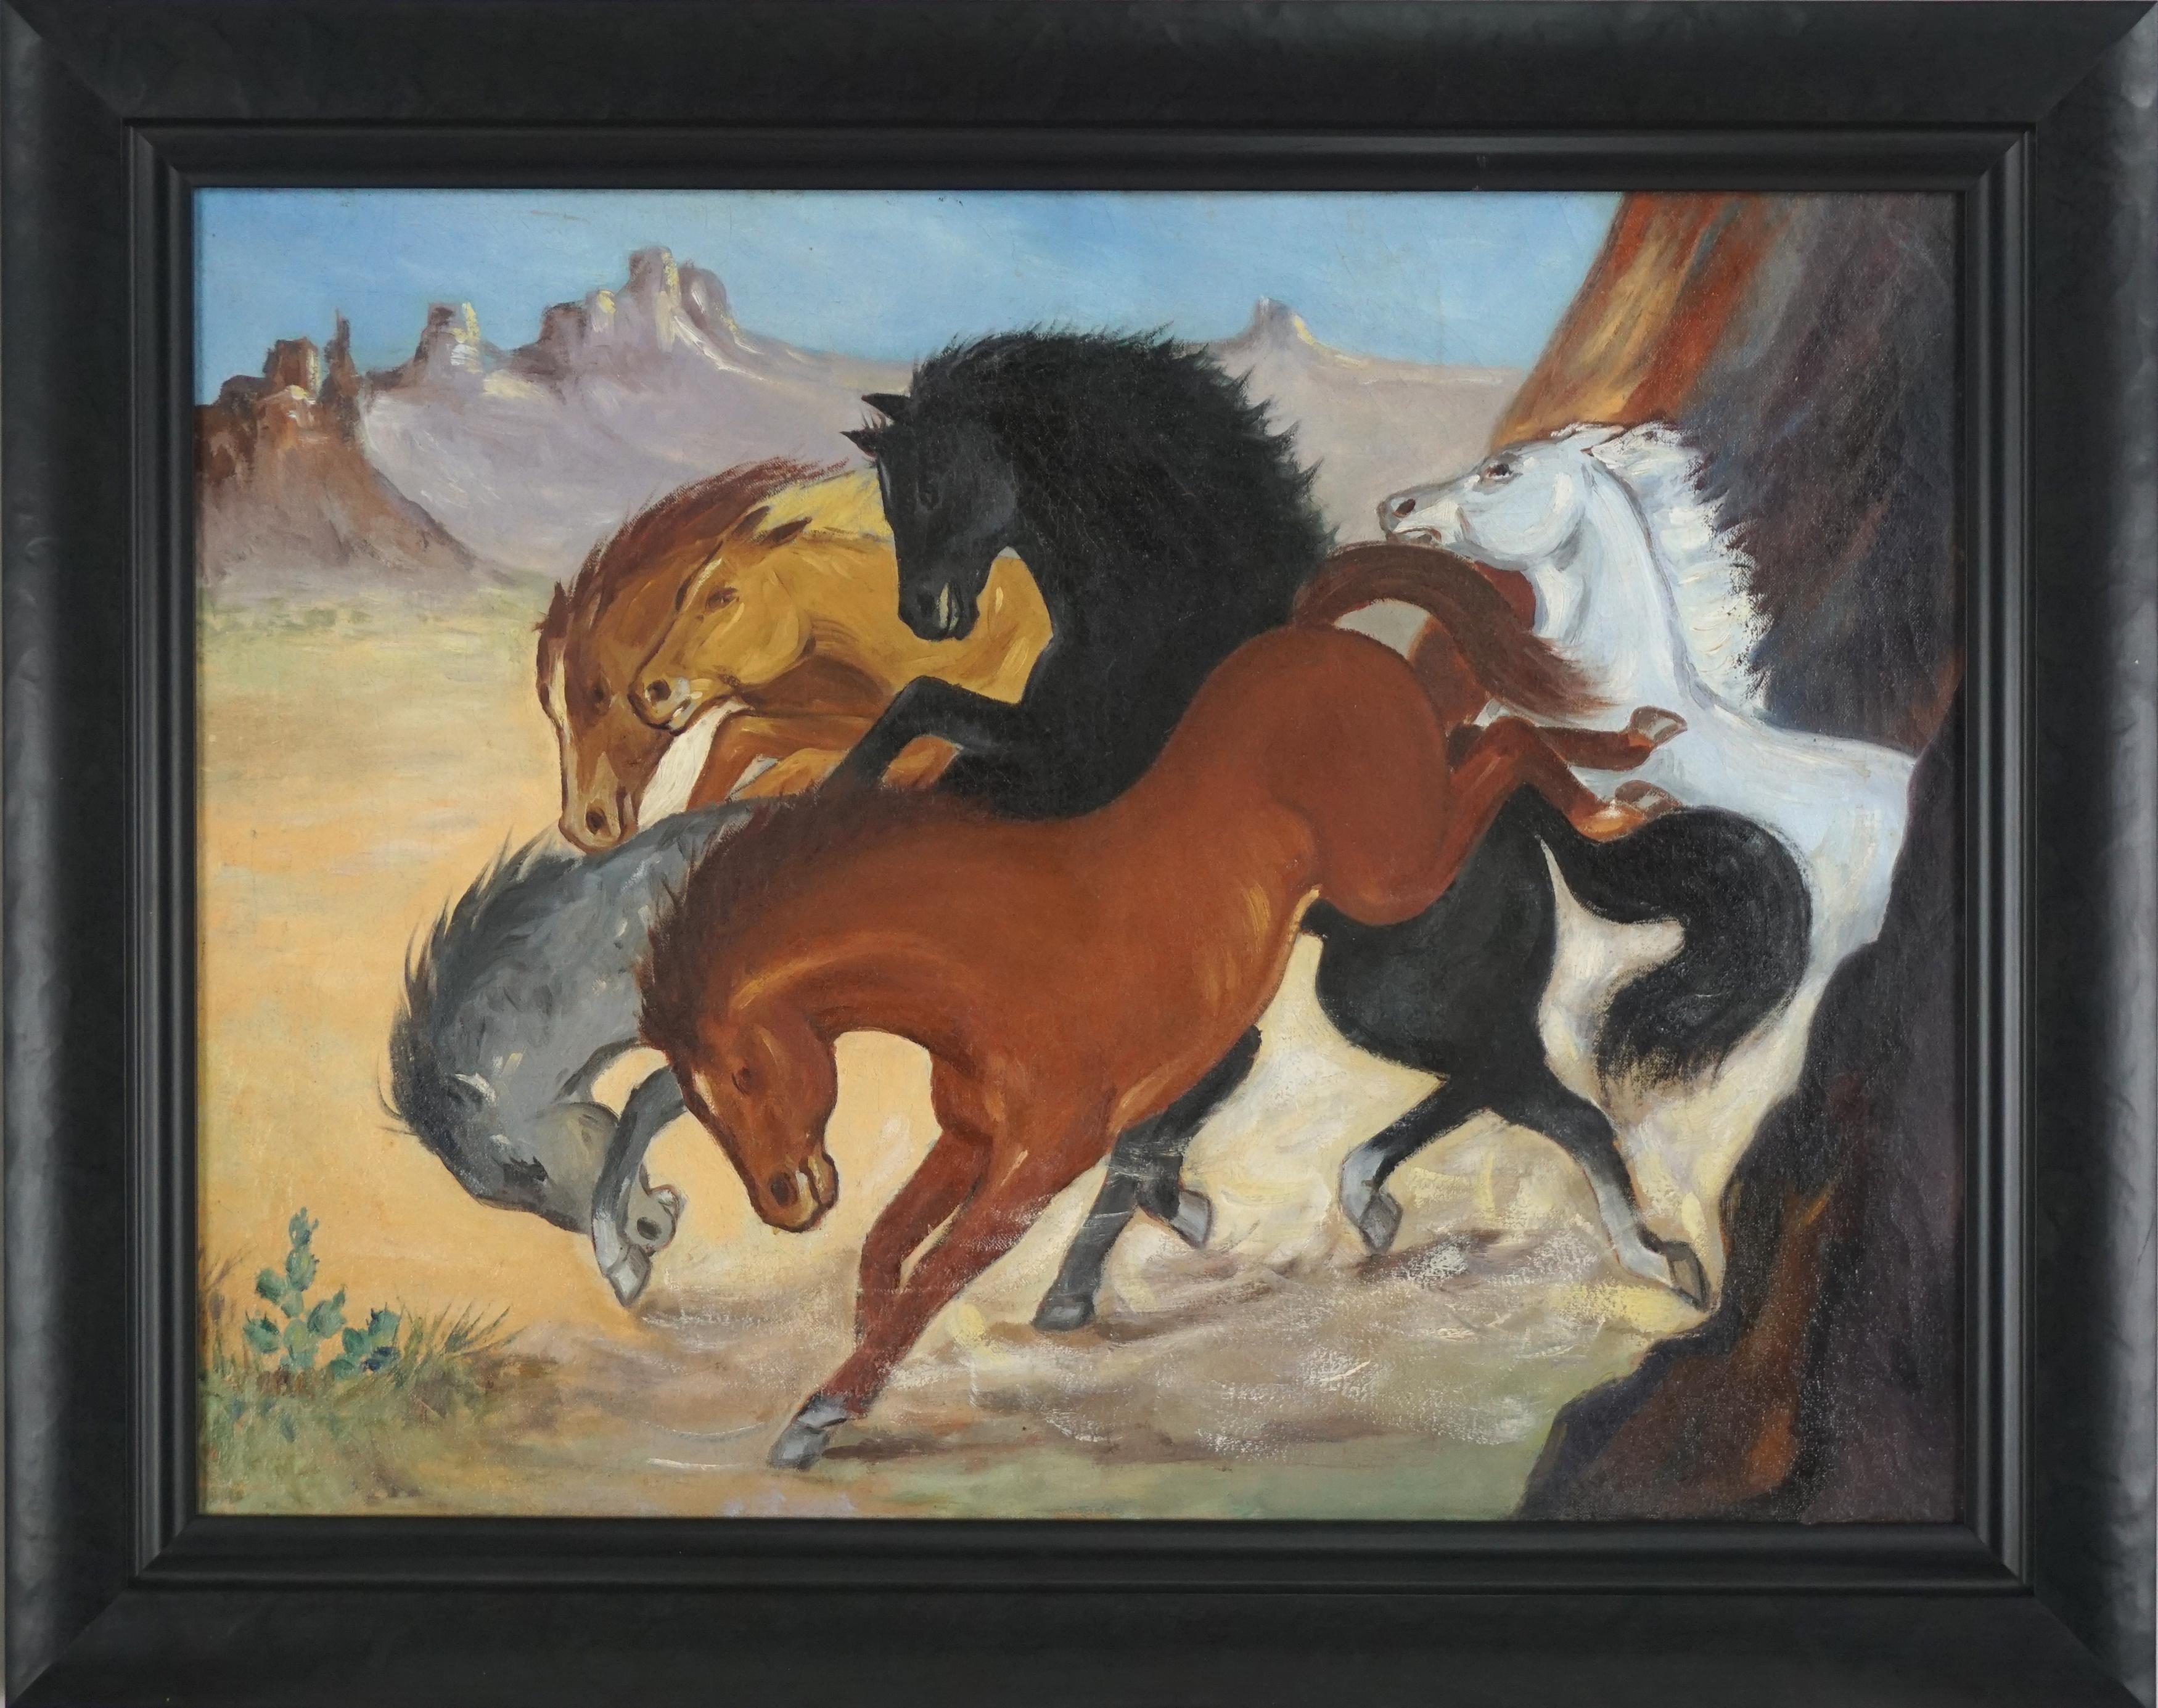 Wunderschönes Gemälde aus den 1950er Jahren mit sechs verschiedenfarbigen Pferden, die im regionalistischen Stil der Works Progress Administration durch den Grand Canyon laufen. Der Sand, der von den Pferden aufgewirbelt wird, trägt zur kinetischen